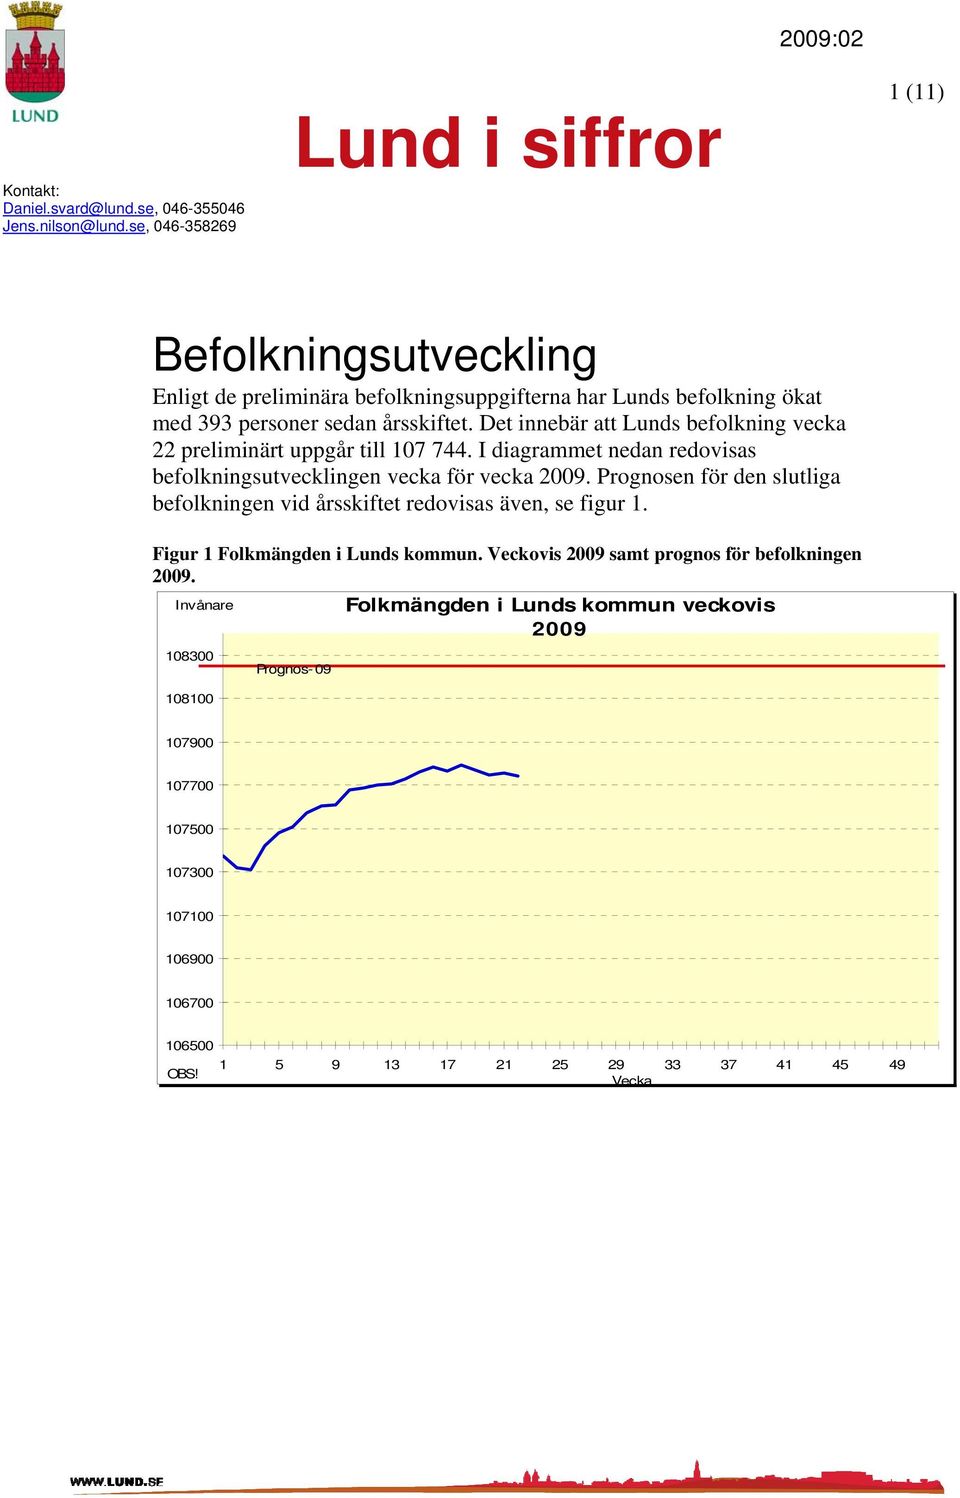 Det innebär att Lunds befolkning vecka 22 preliminärt uppgår till 107 744. I diagrammet nedan redovisas befolkningsutvecklingen vecka för vecka 2009.